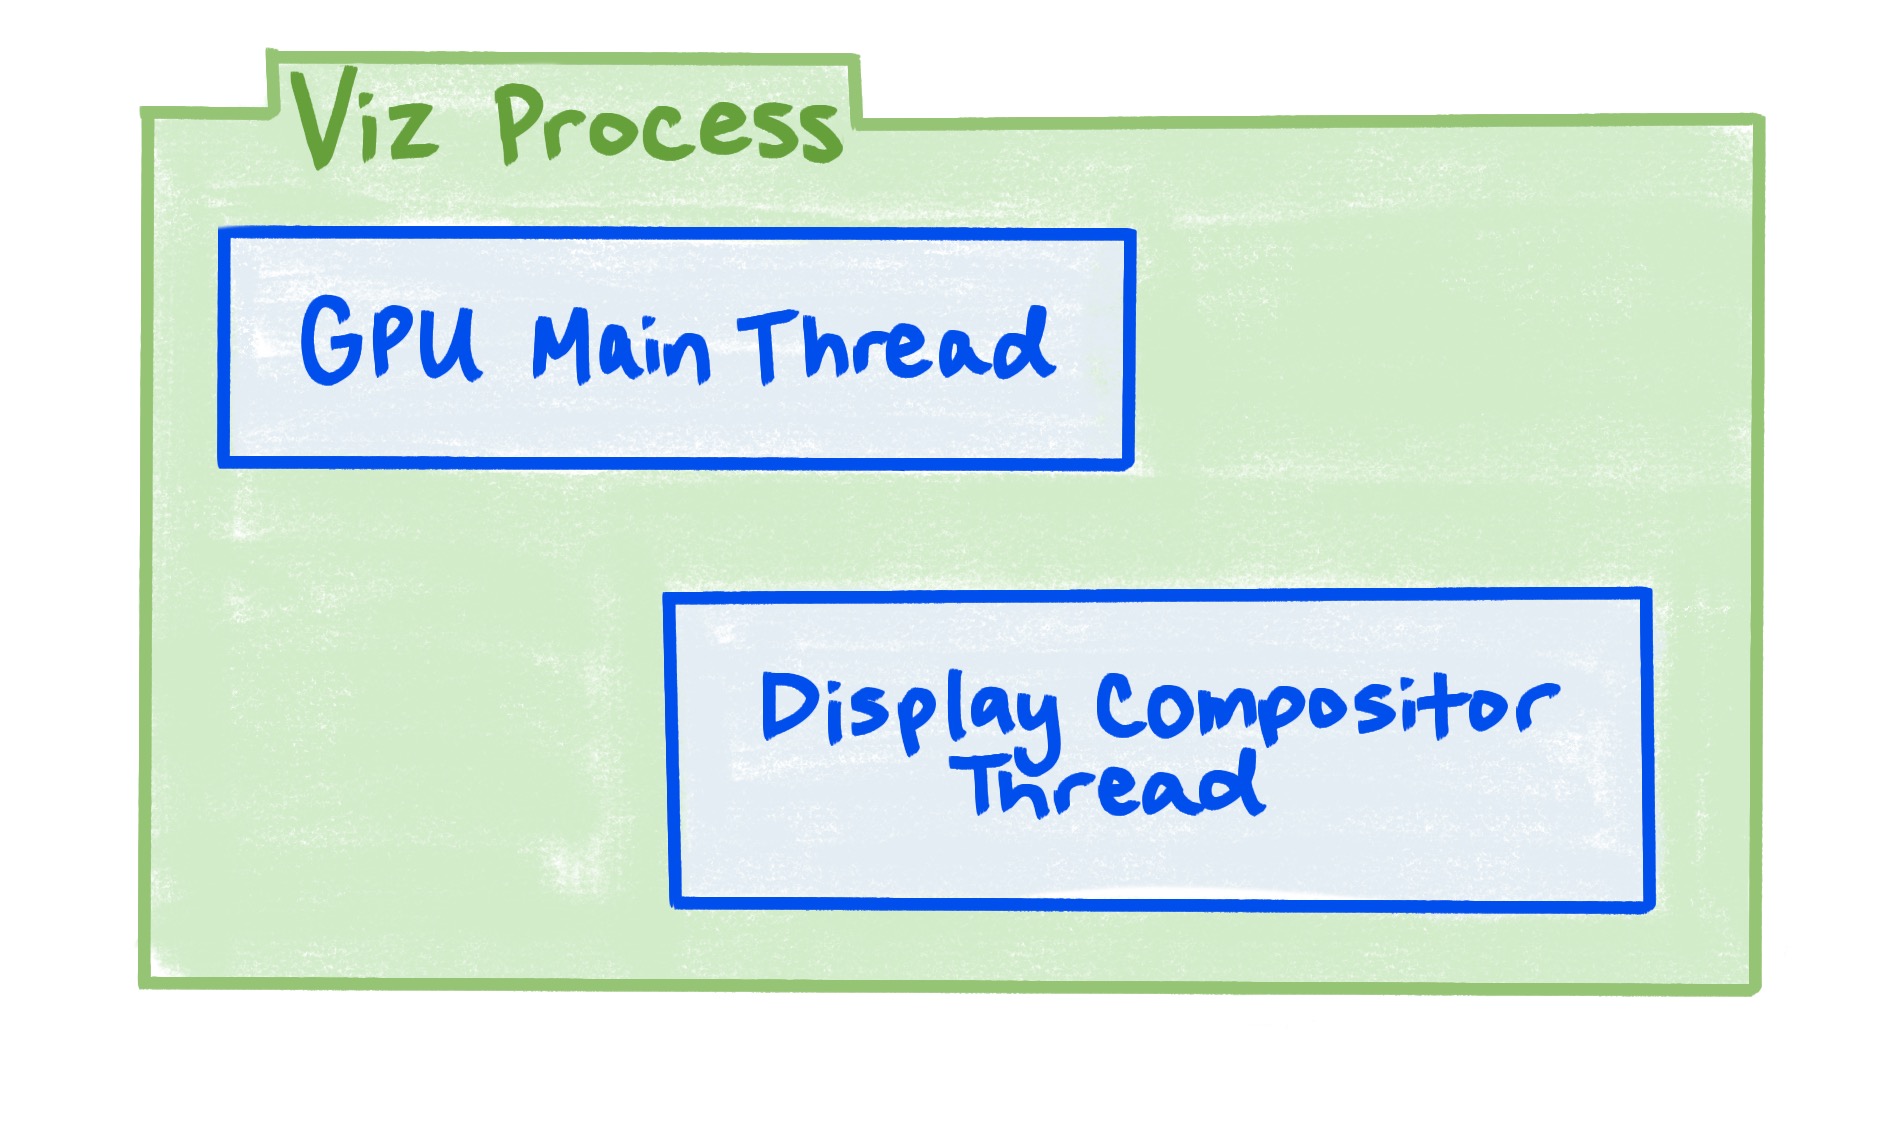 Viz işleminin GPU ana iş parçacığını ve görüntü birleştirici iş parçacığını içerdiğini gösteren şema.